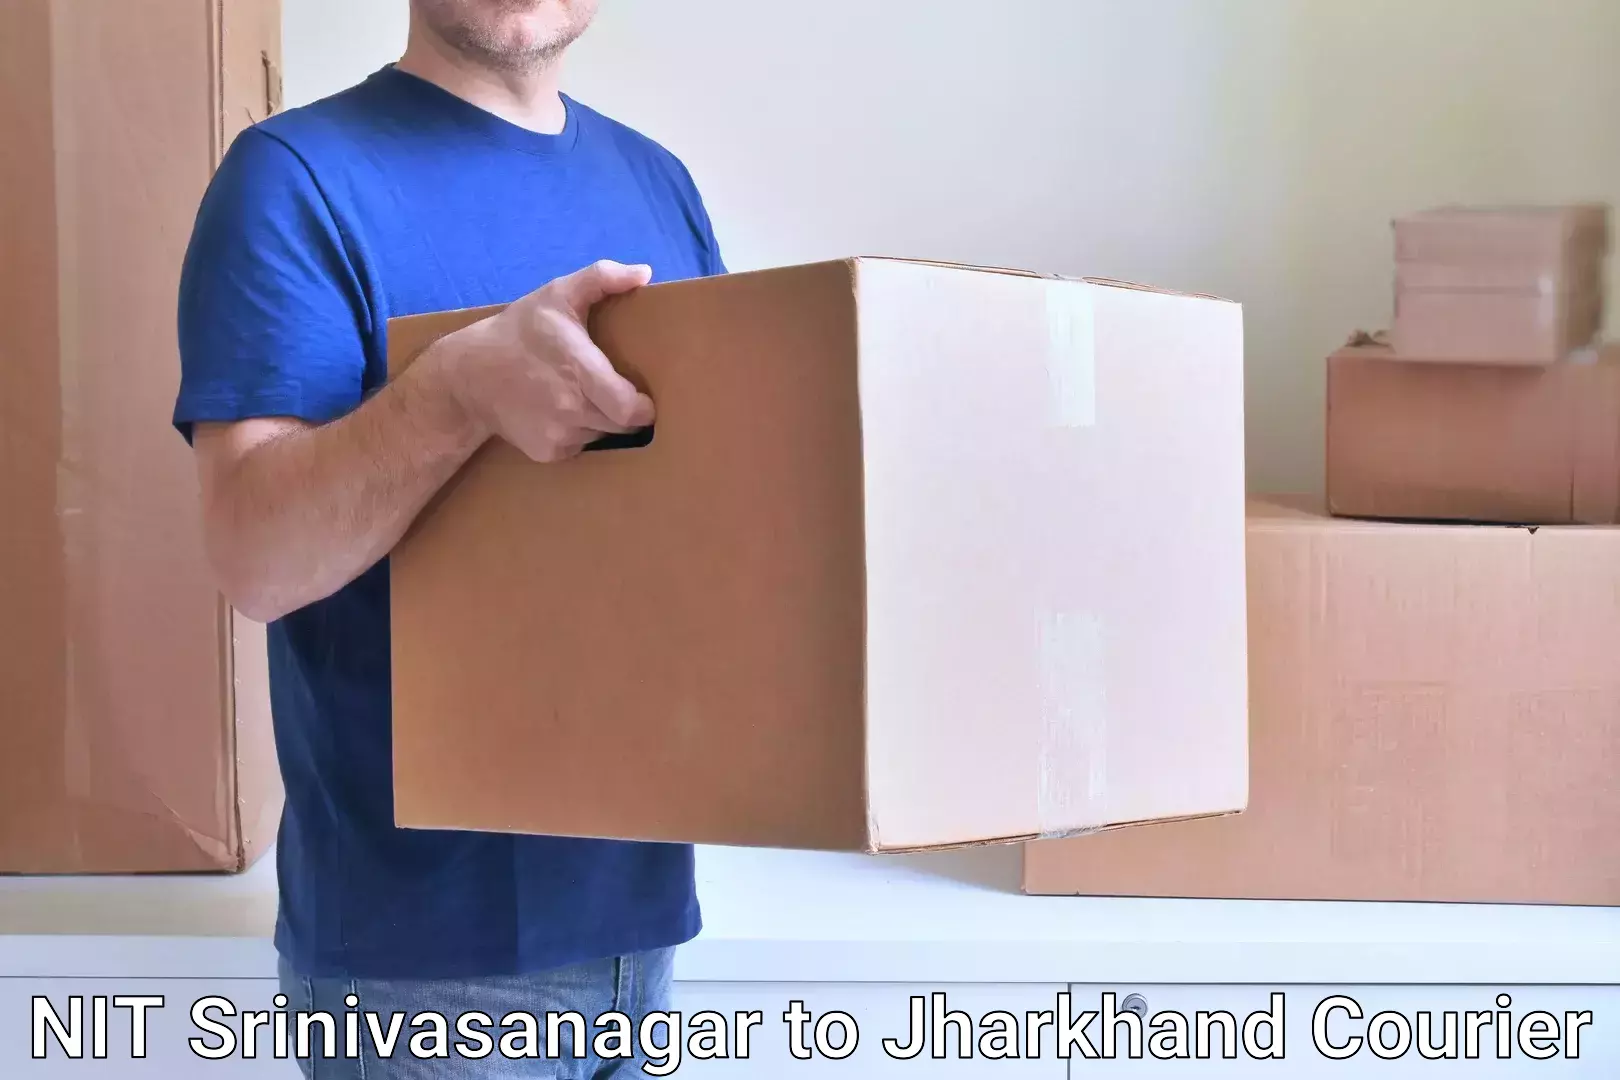 Innovative courier solutions NIT Srinivasanagar to Ranchi